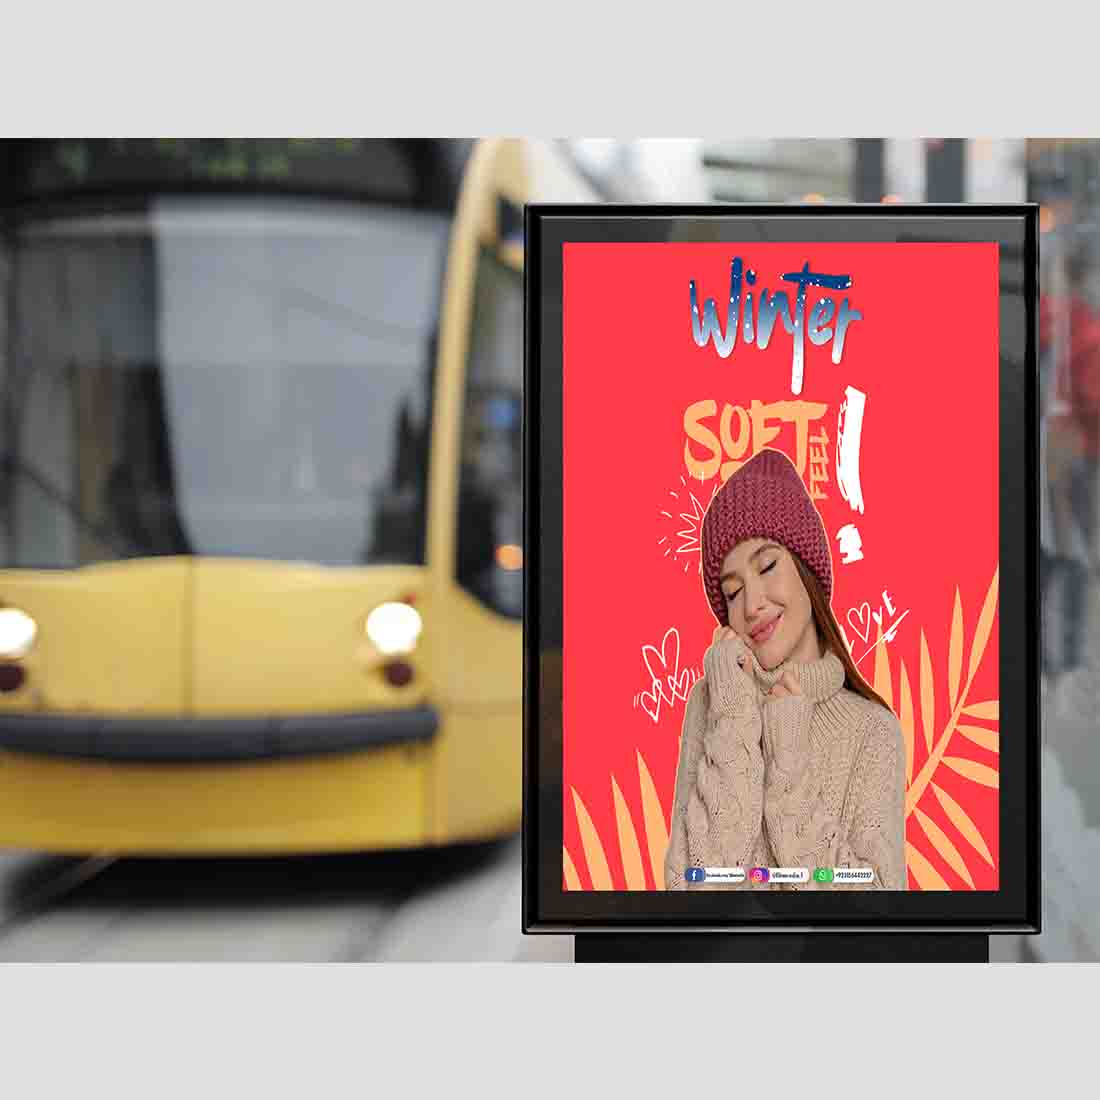 Outdoor Bus Stop Advertisement Vertical Billboard Poster Mockup PSD